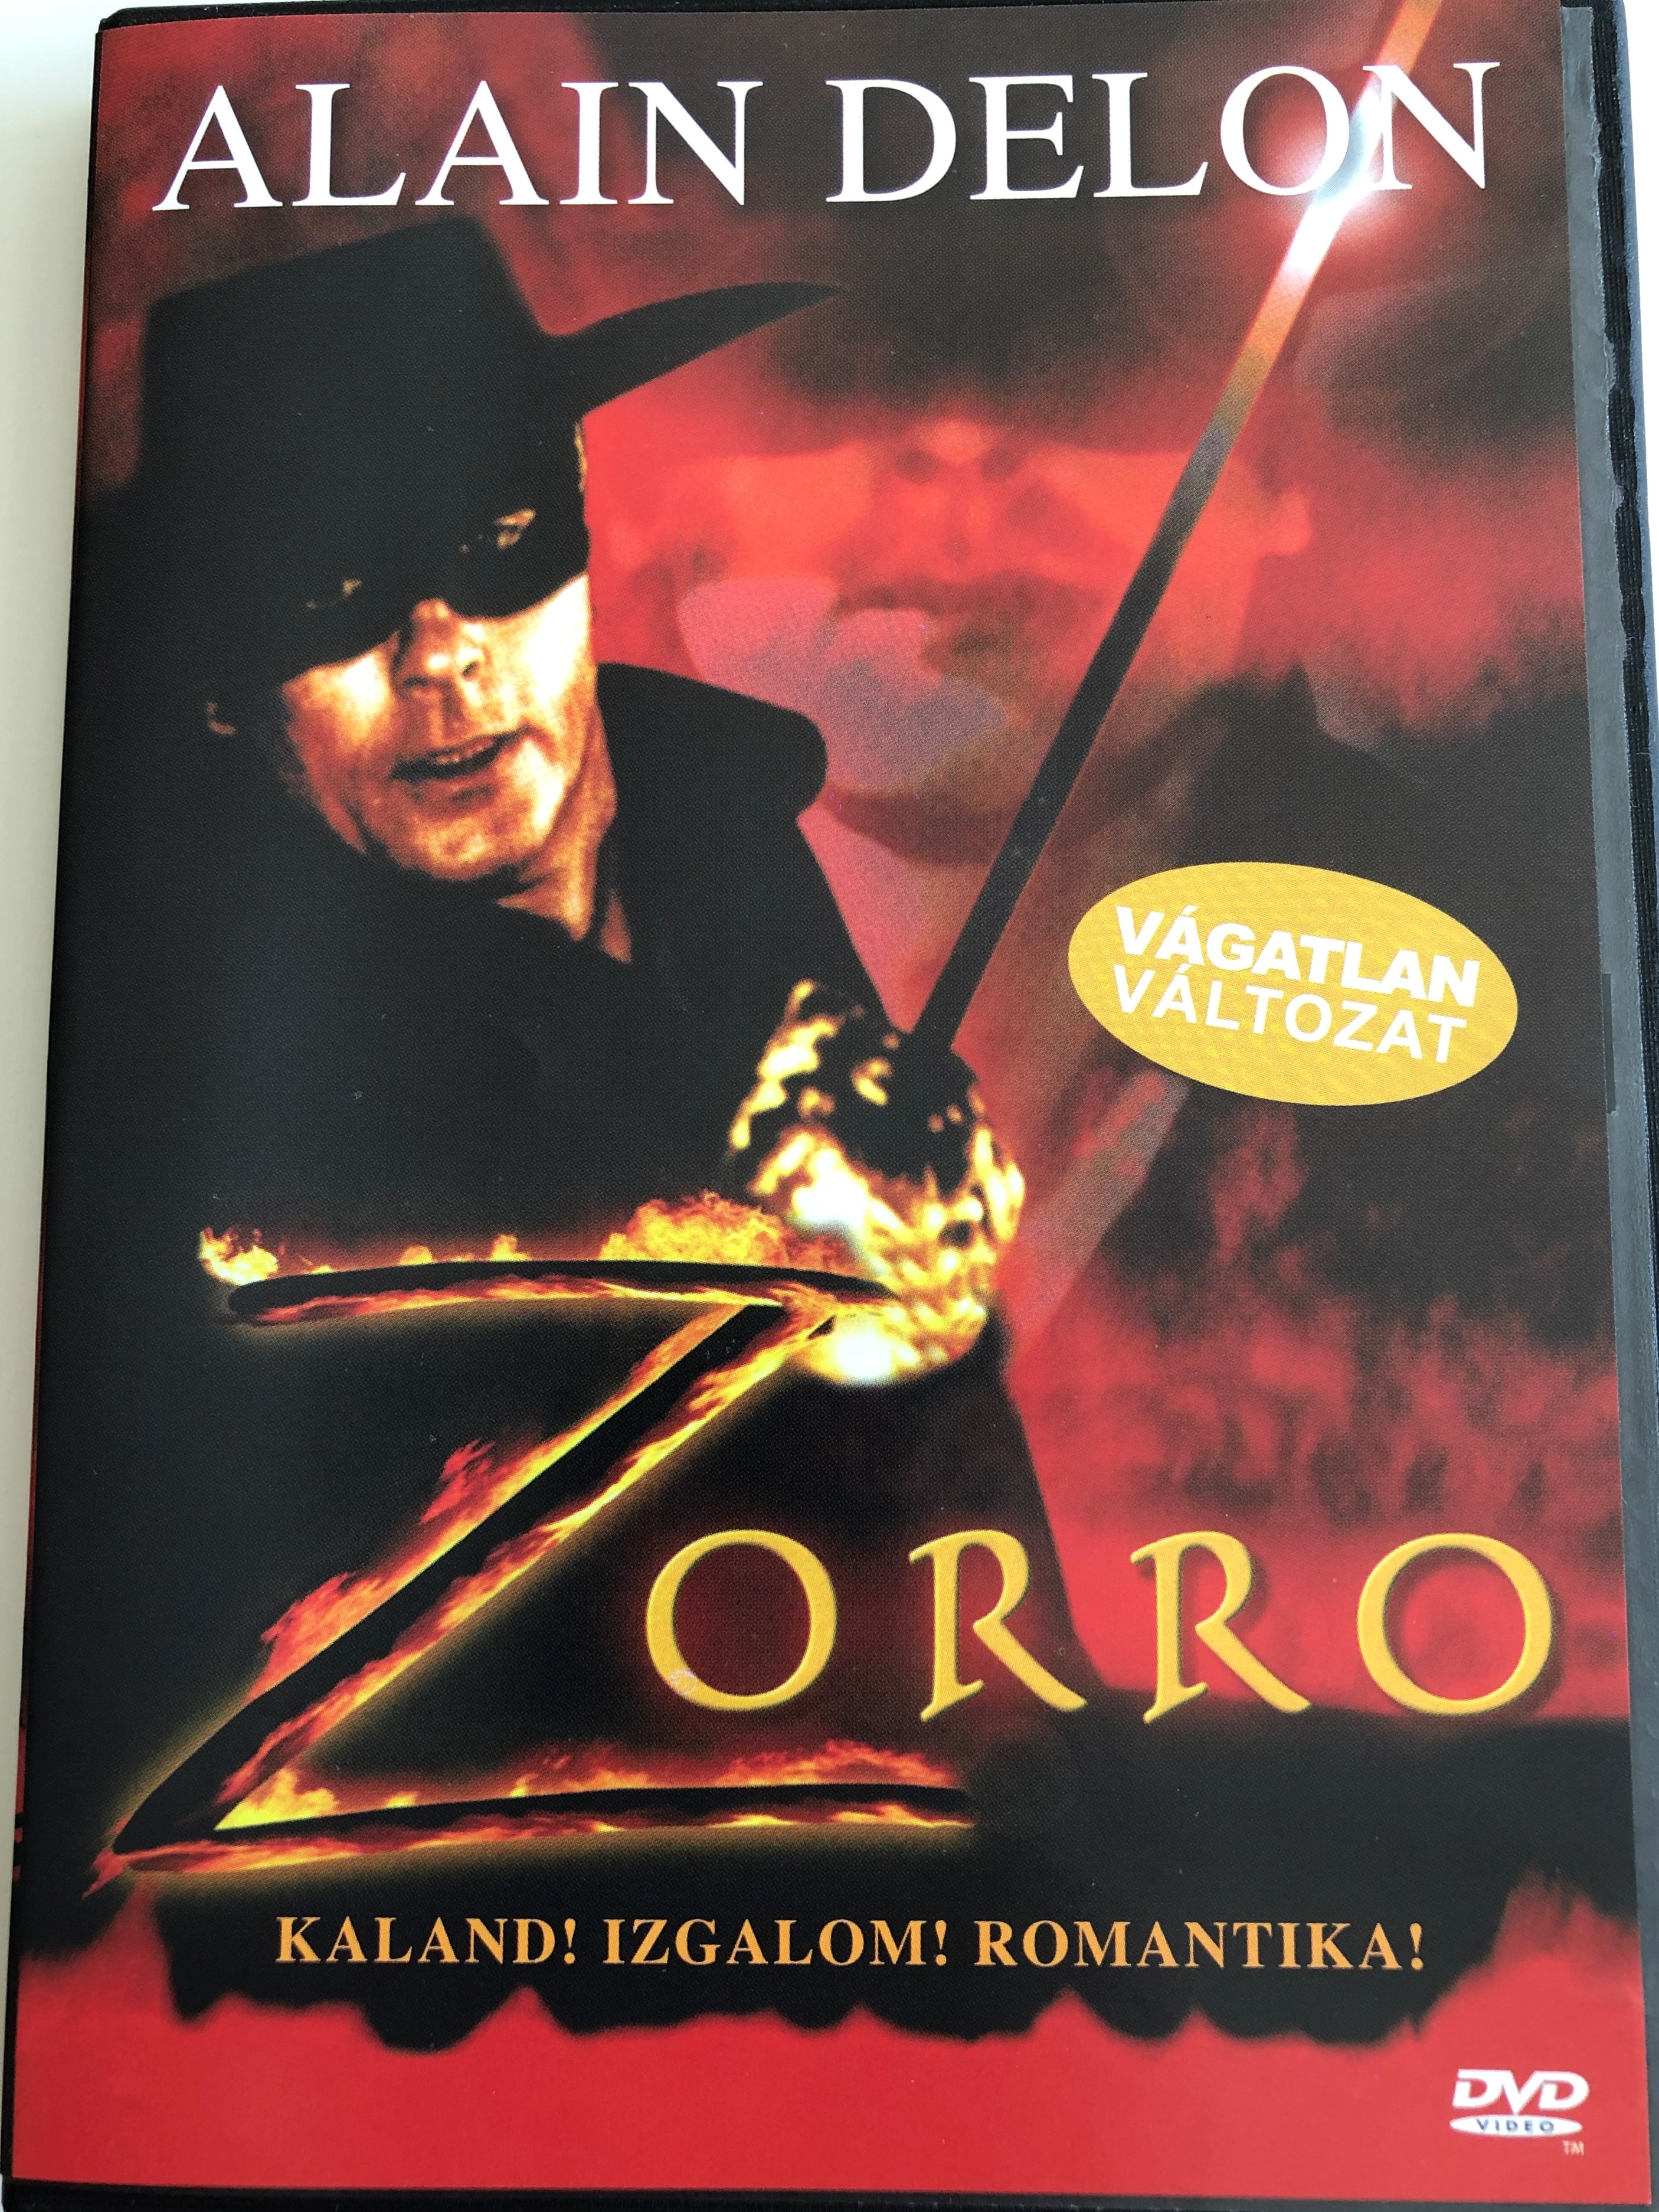 zorro-dvd-1975-directed-by-duccio-tessari-starring-alain-delon-ottavia-piccolo-enzo-cerusico-moustache-giacomo-uncut-edition-1-.jpg